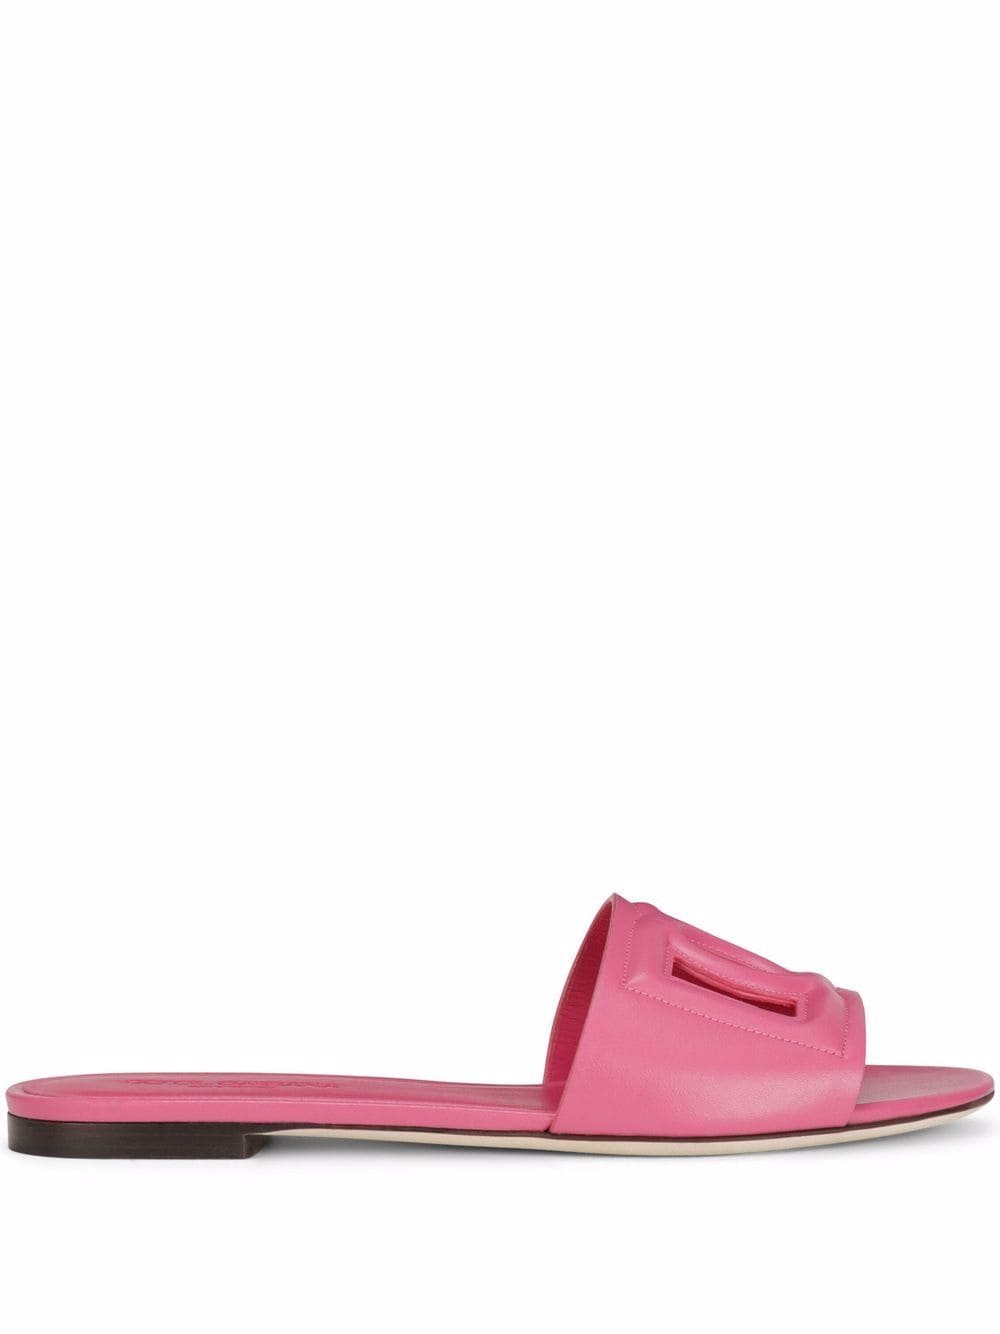 Sandali in pelle rosa con logo DG<br><br><br>